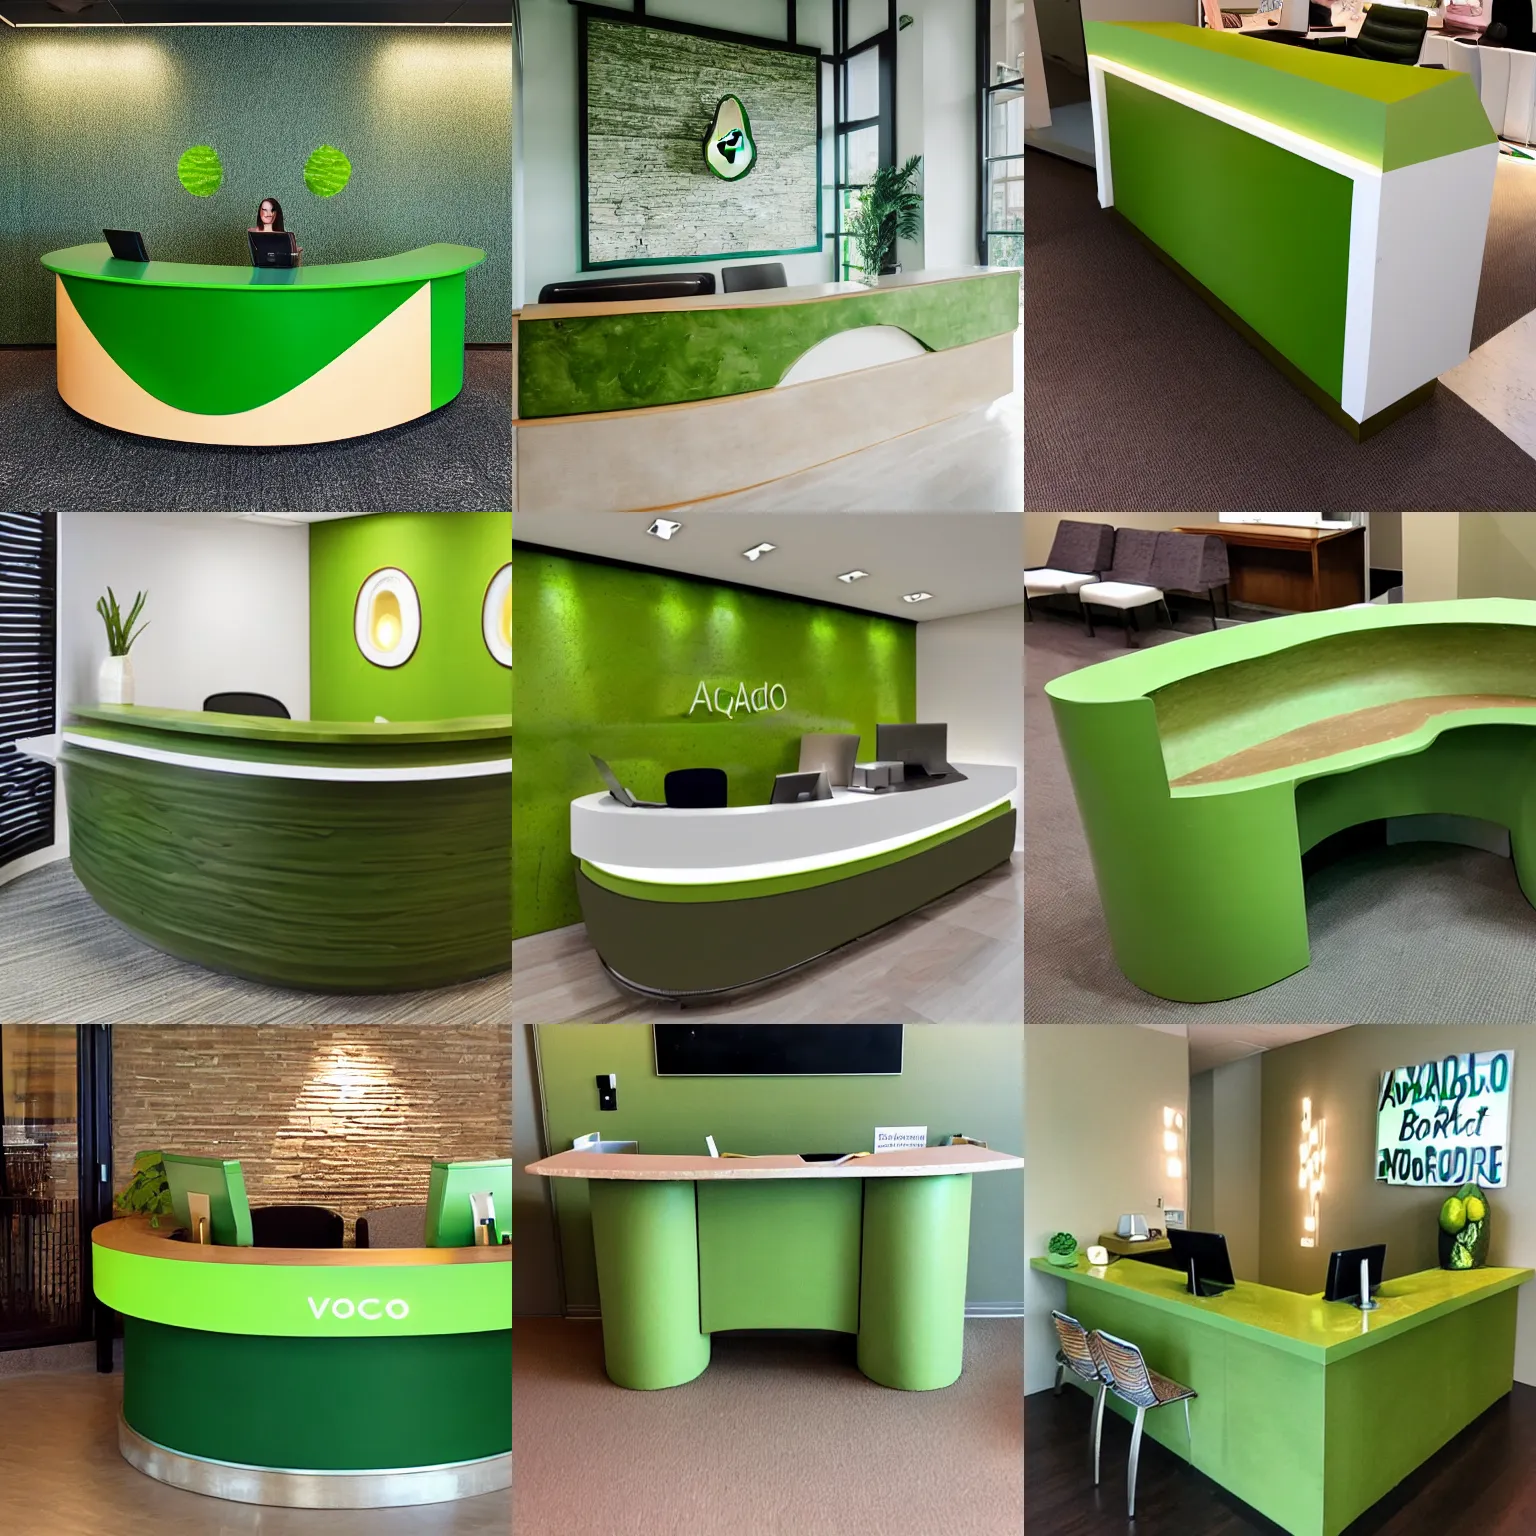 Prompt: Avocado colored reception desk